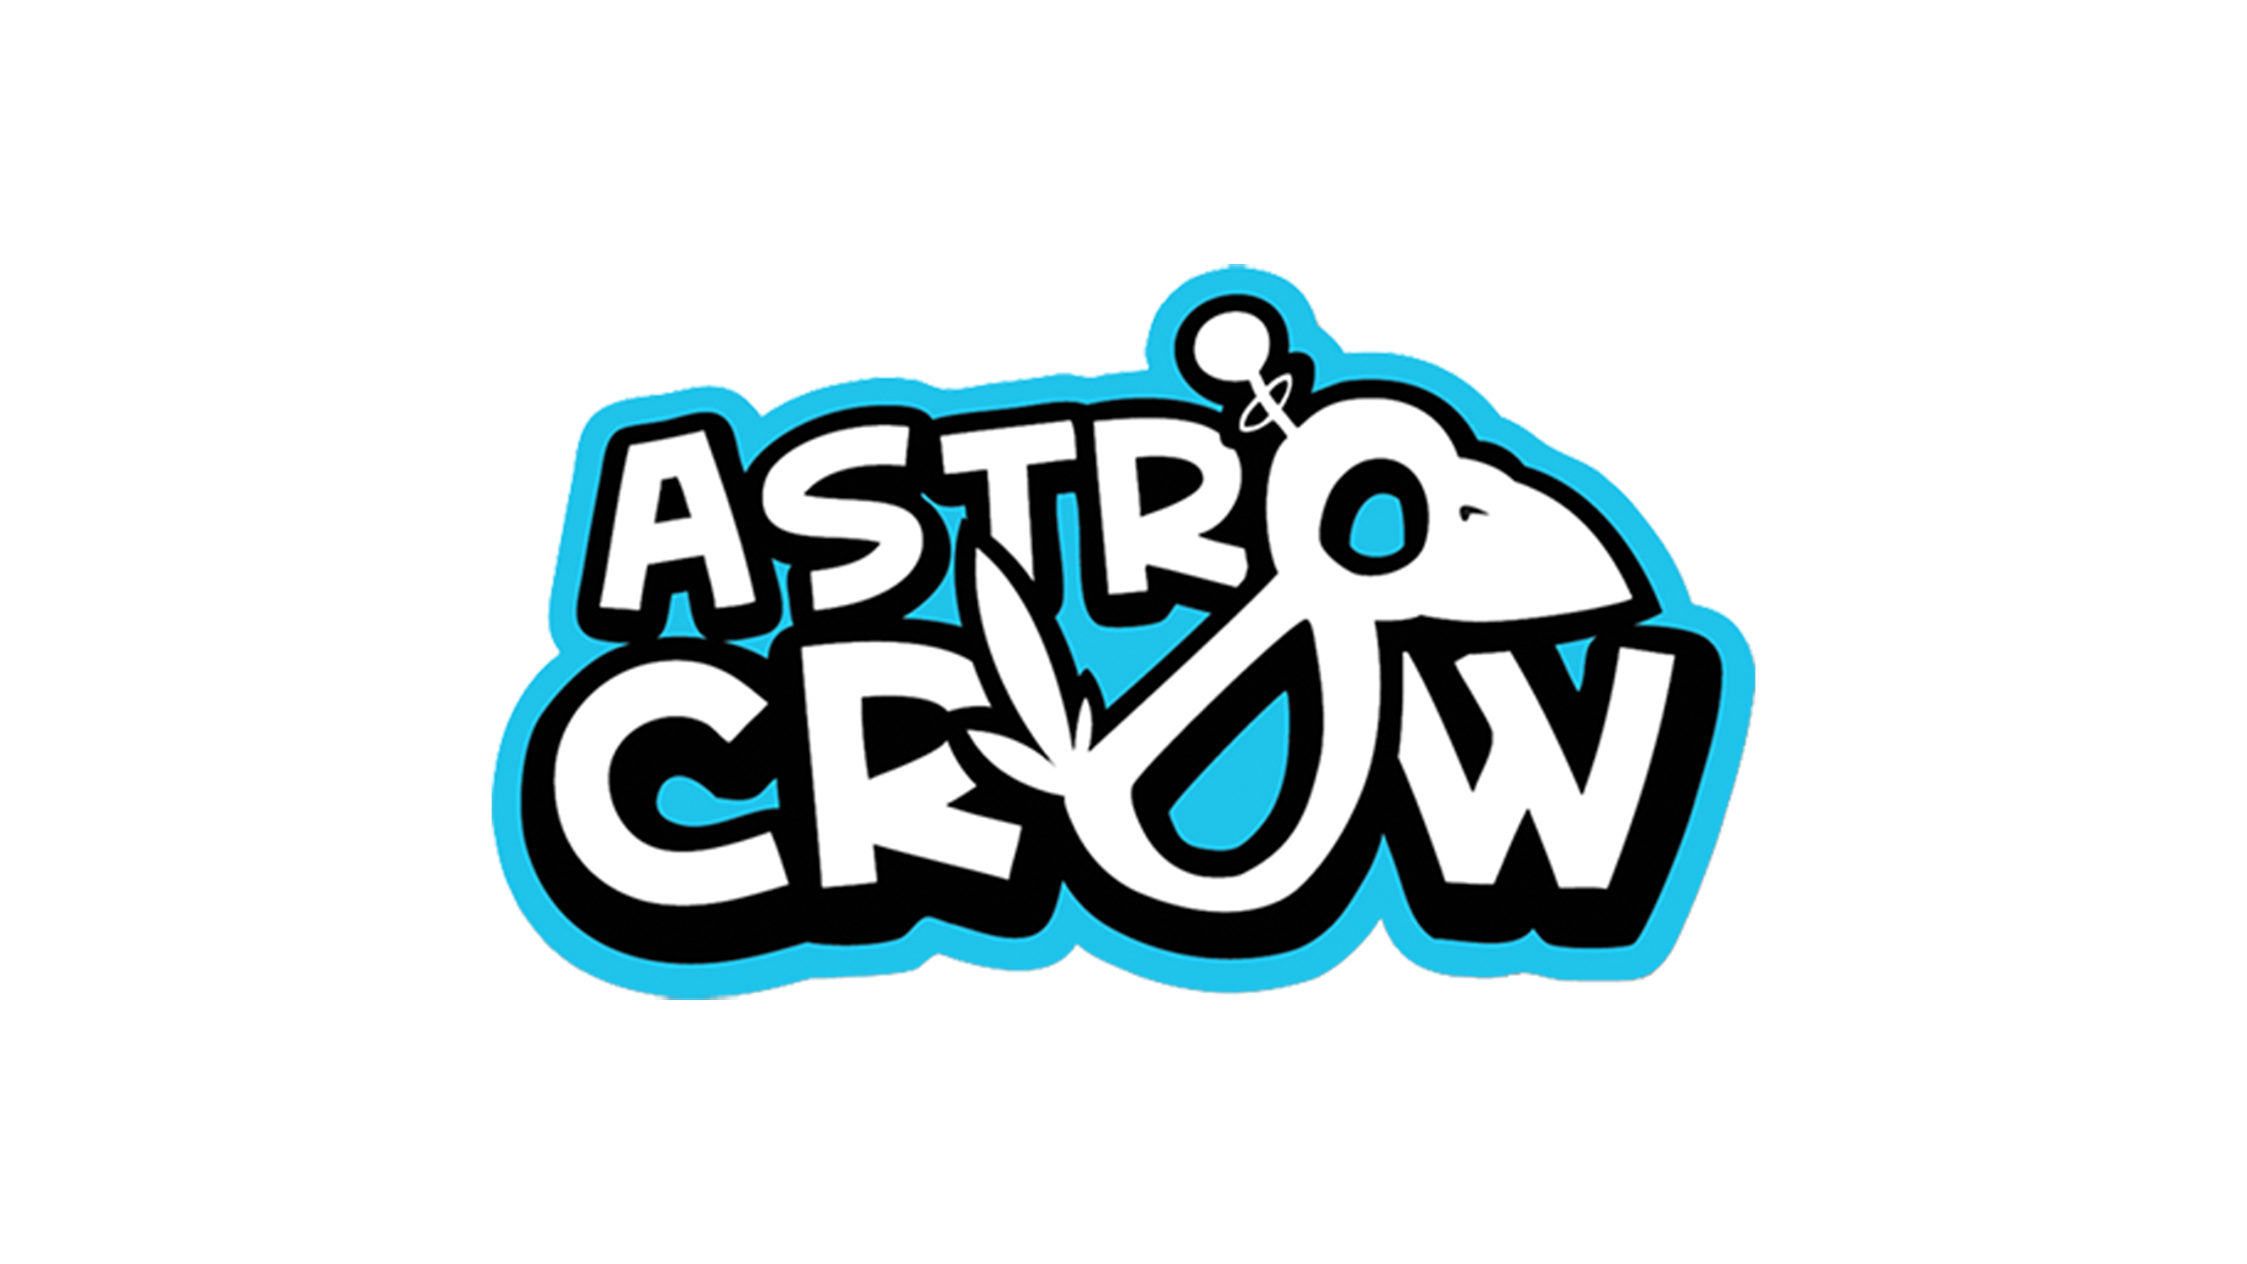 Astro Crow